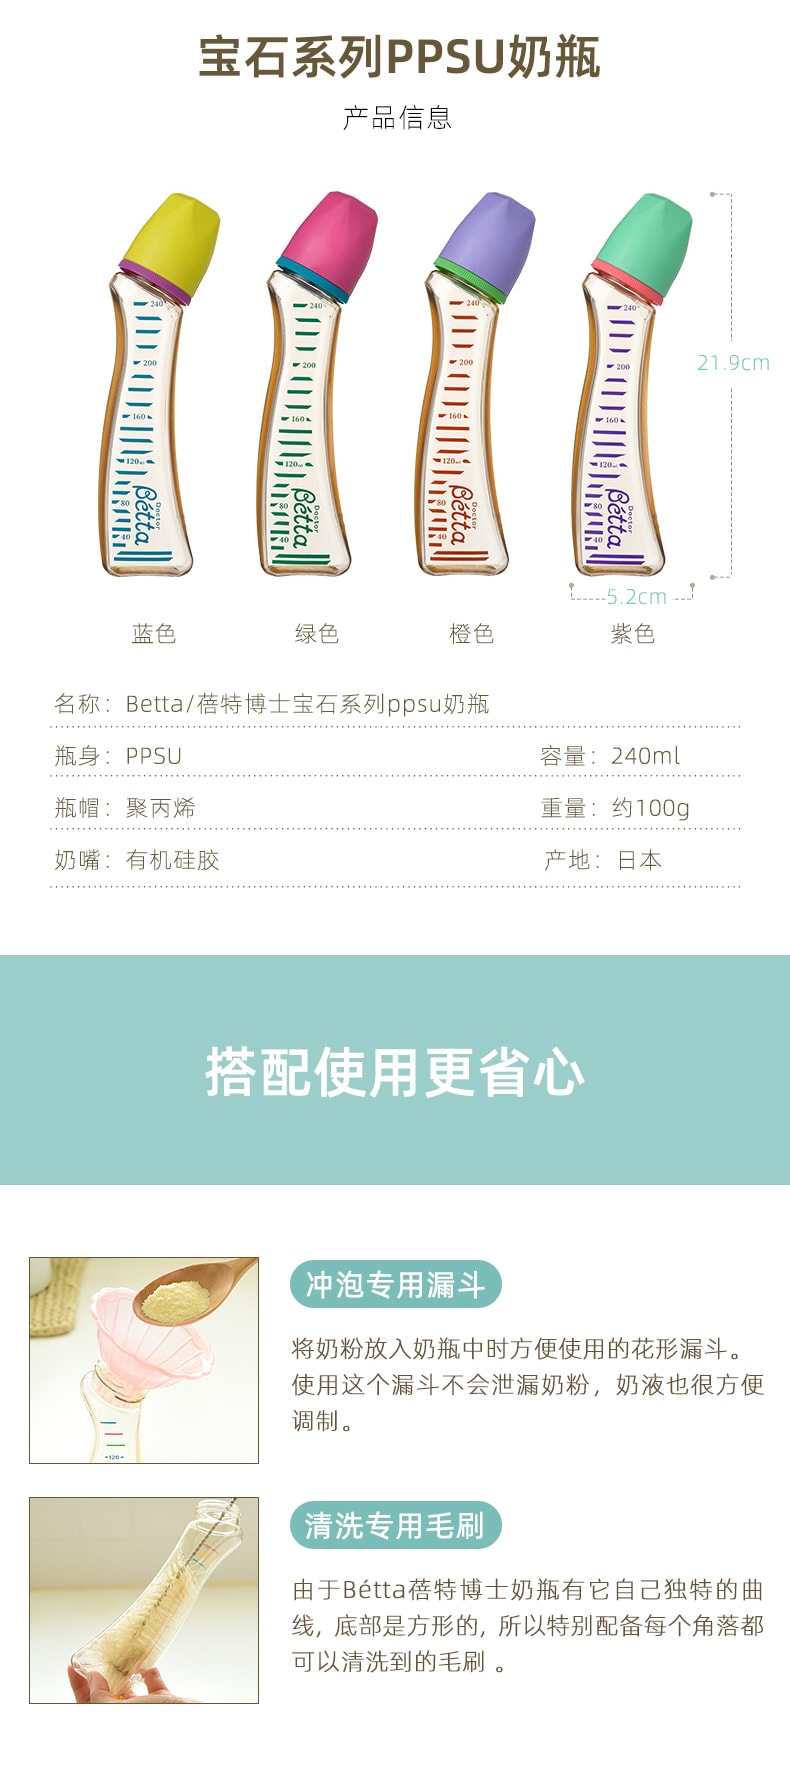 【日本直邮】日本Betta奶瓶PPSU宝石系列 婴儿宝宝奶瓶蓓特曲线奶瓶 240ml 颜色随机发送